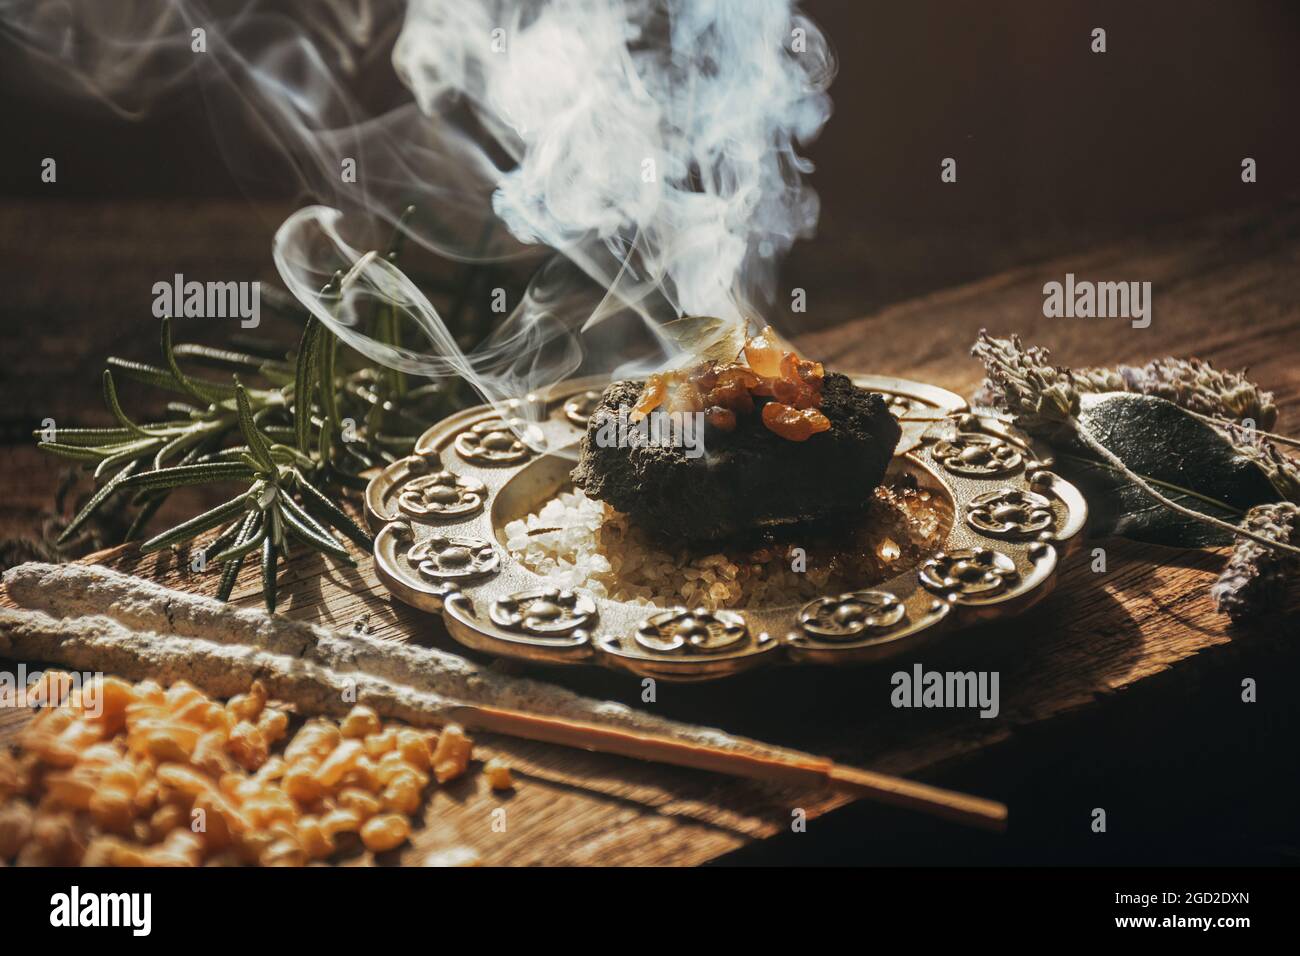 Encensoir De Main Avec L'encens Brûlant Sur Le Charbon De Bois Chaud à  L'intérieur Image stock - Image du charbon, encens: 150586995